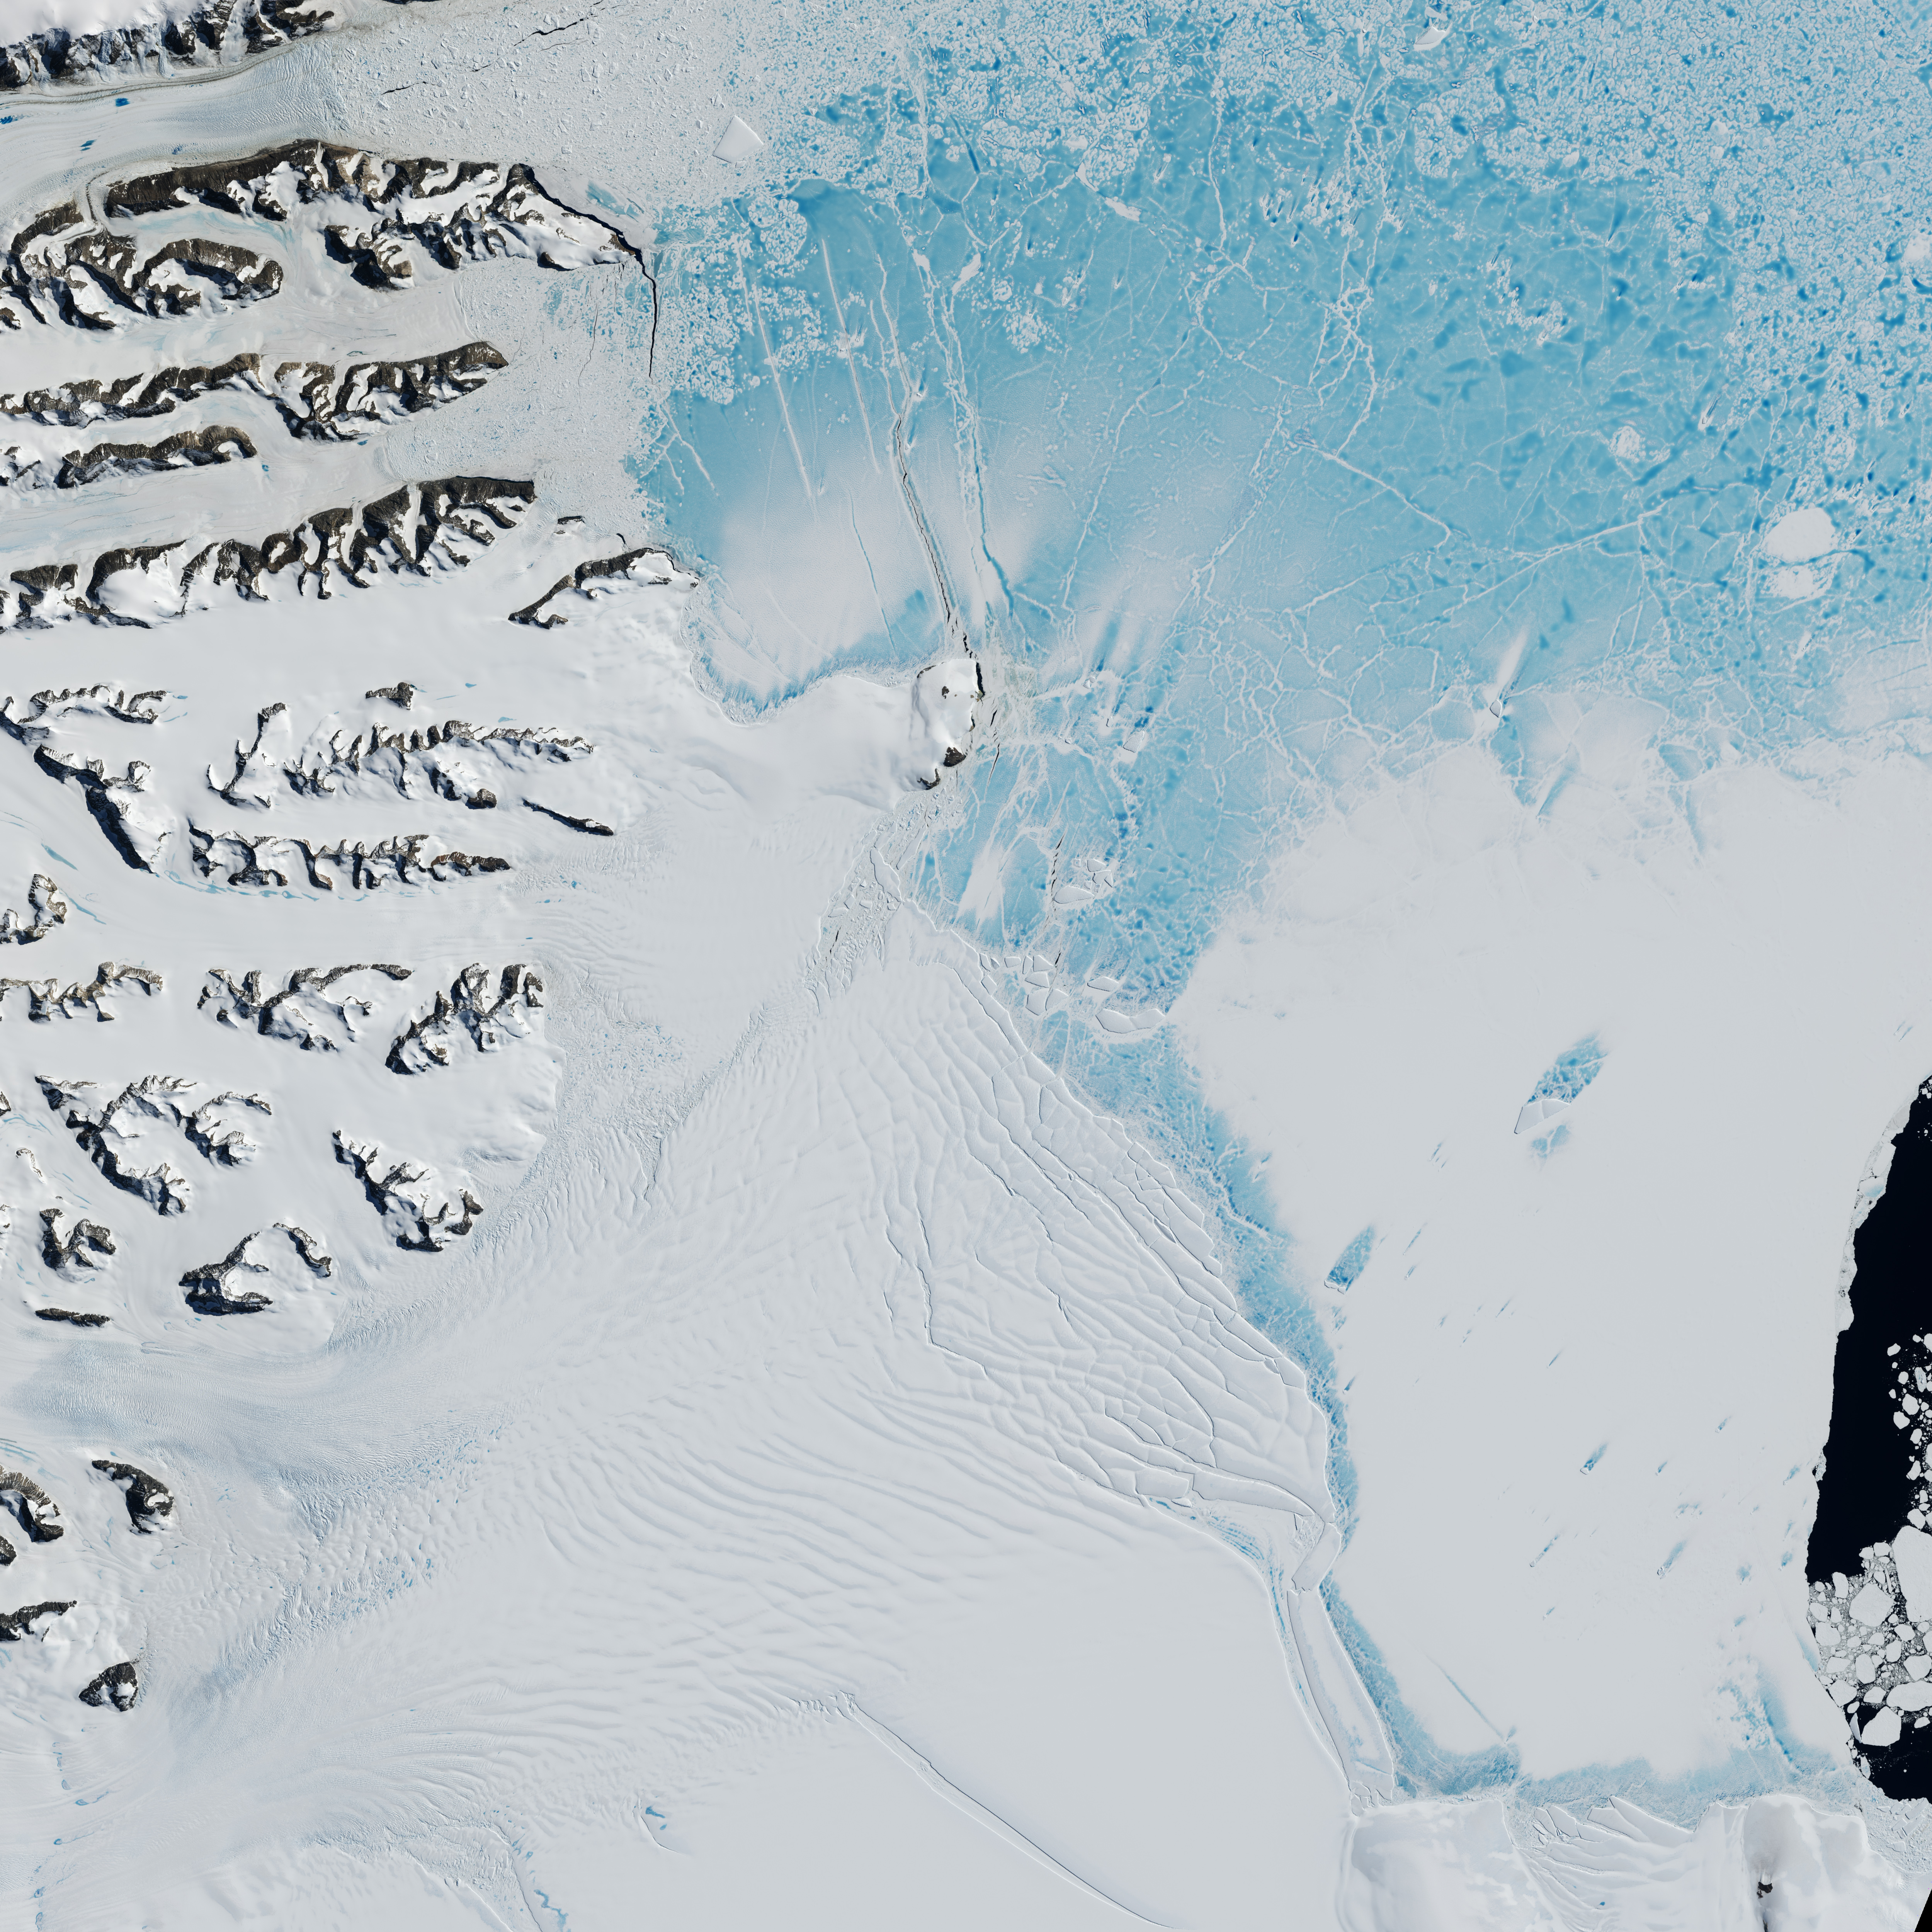 Larsen C Ice Shelve in Antarctica